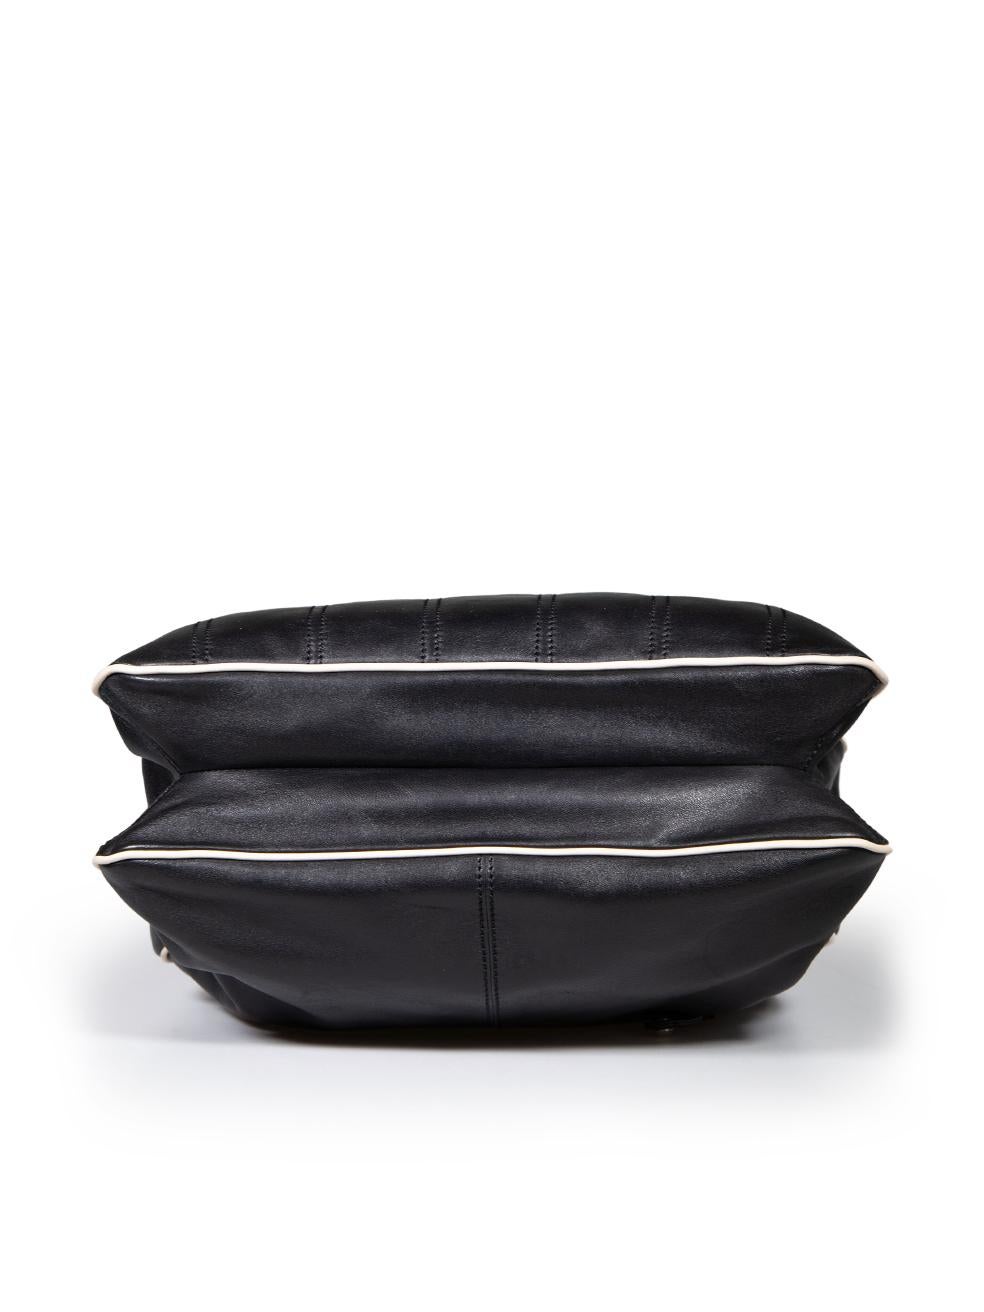 Women's Tod's Black Leather Panelled Shoulder Bag For Sale